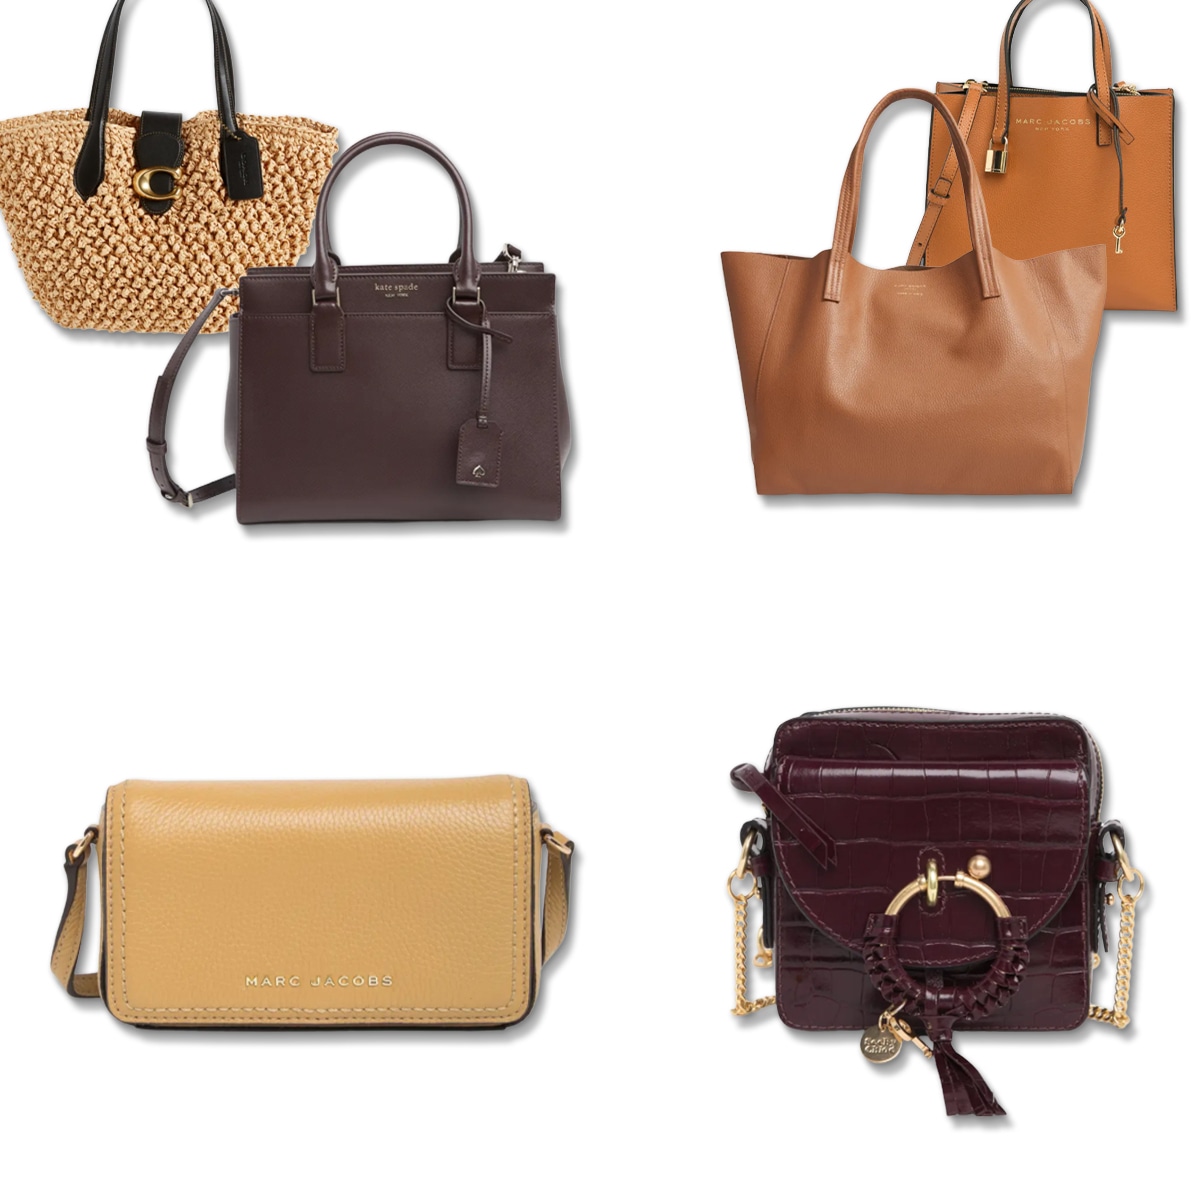 Nordstrom Rack Handbag Deals: Save 83% on Kate Spade and More - E! Online